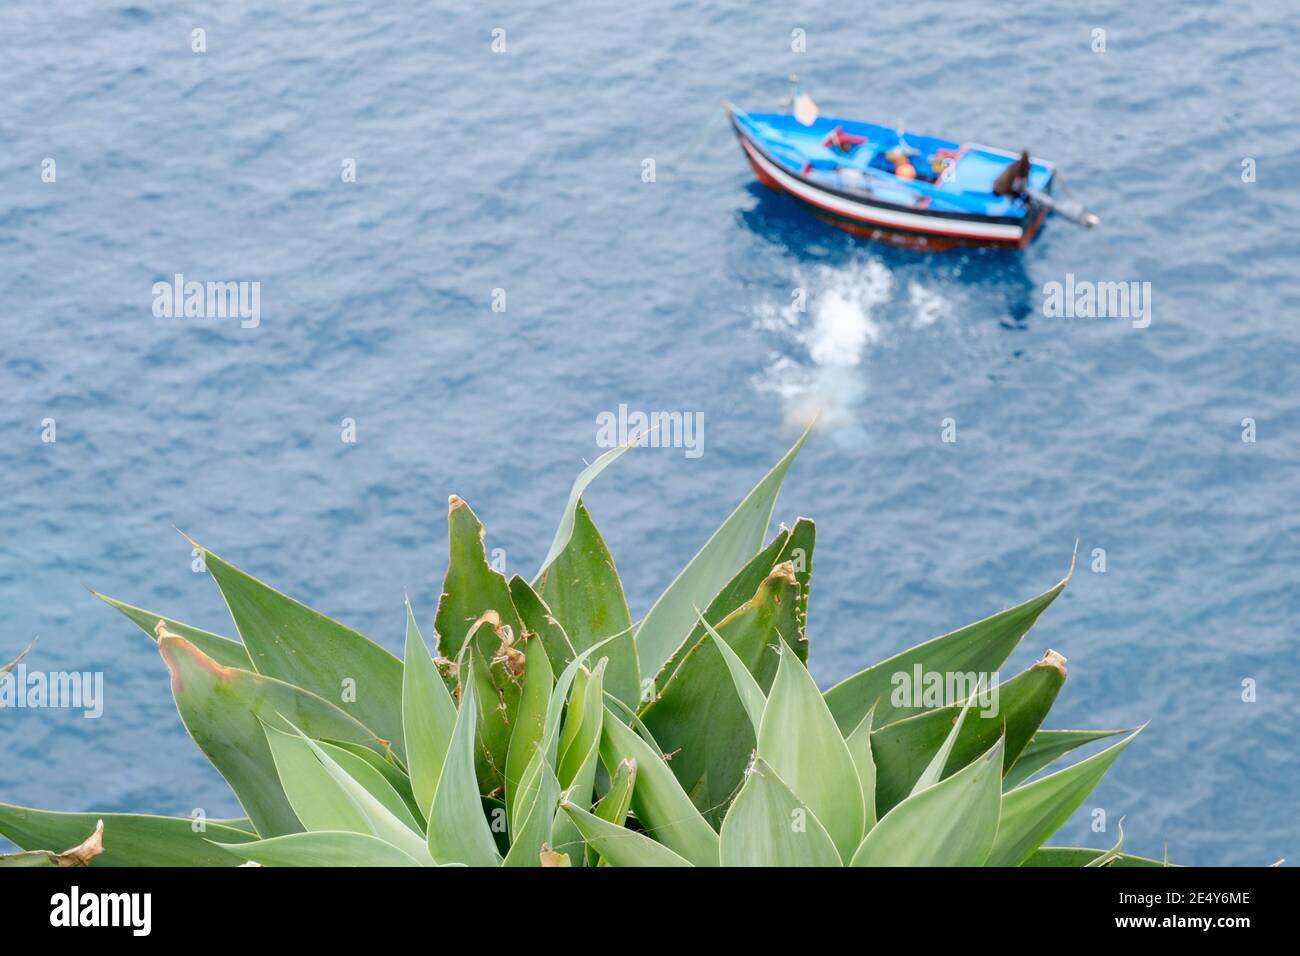 Un enourmous succulente che punta verso l'oceano in alto vista con un'imbarcazione che si batte sullo sfondo in acqua Foto Stock